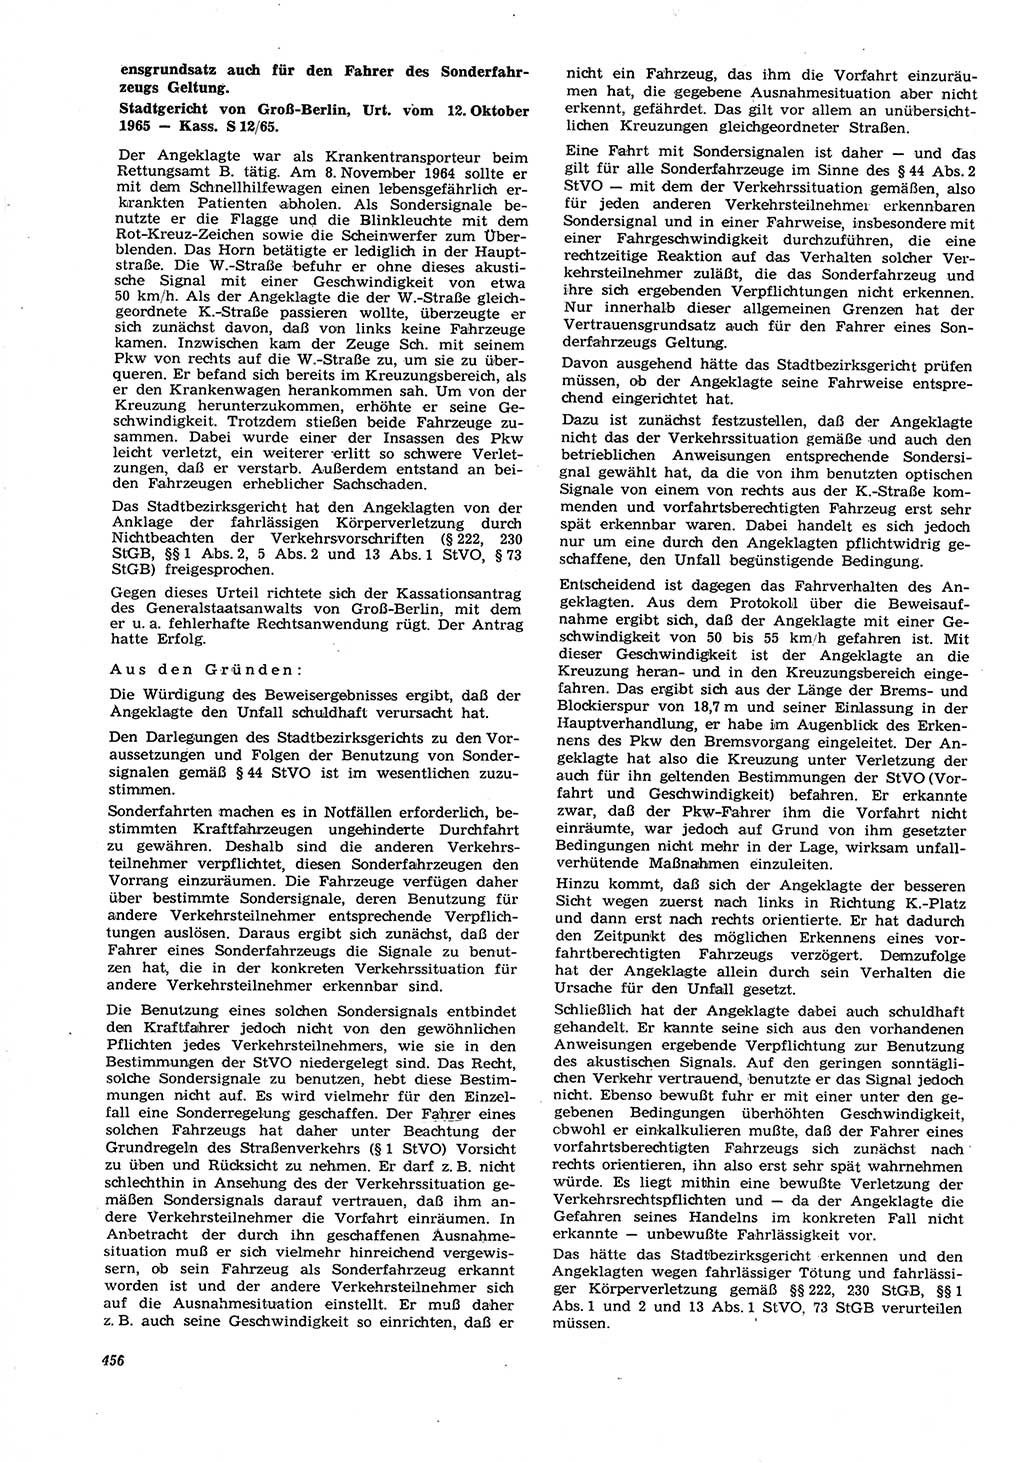 Neue Justiz (NJ), Zeitschrift für Recht und Rechtswissenschaft [Deutsche Demokratische Republik (DDR)], 21. Jahrgang 1967, Seite 456 (NJ DDR 1967, S. 456)